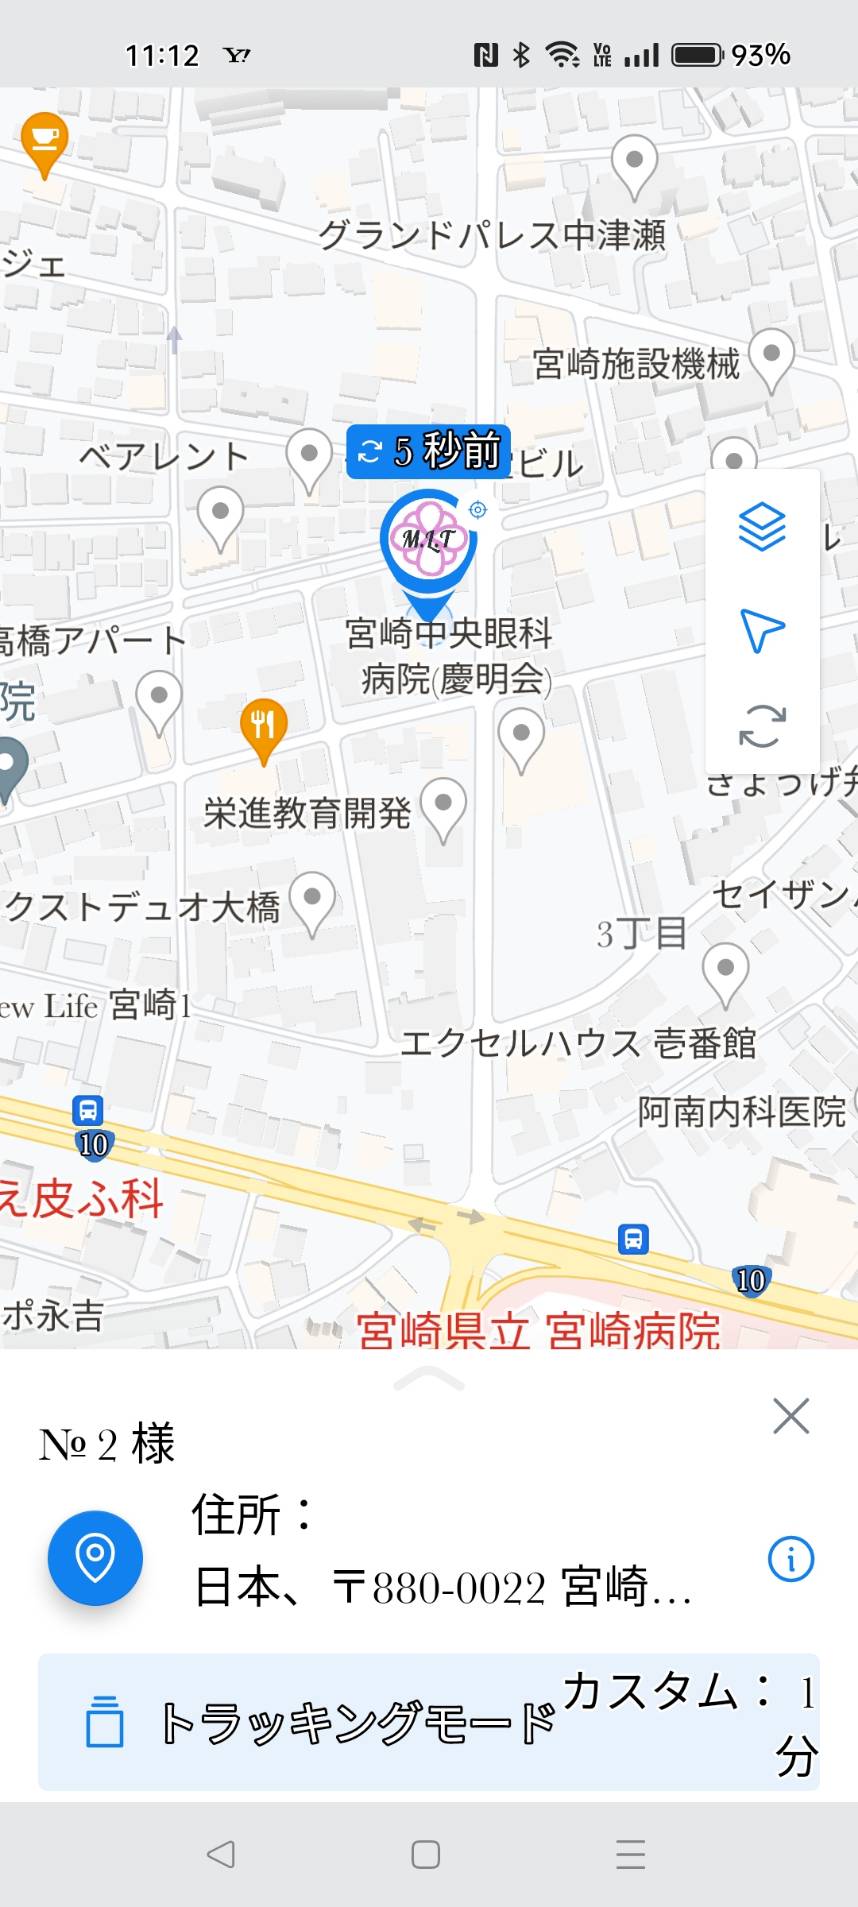 宮崎市GPSレンタル